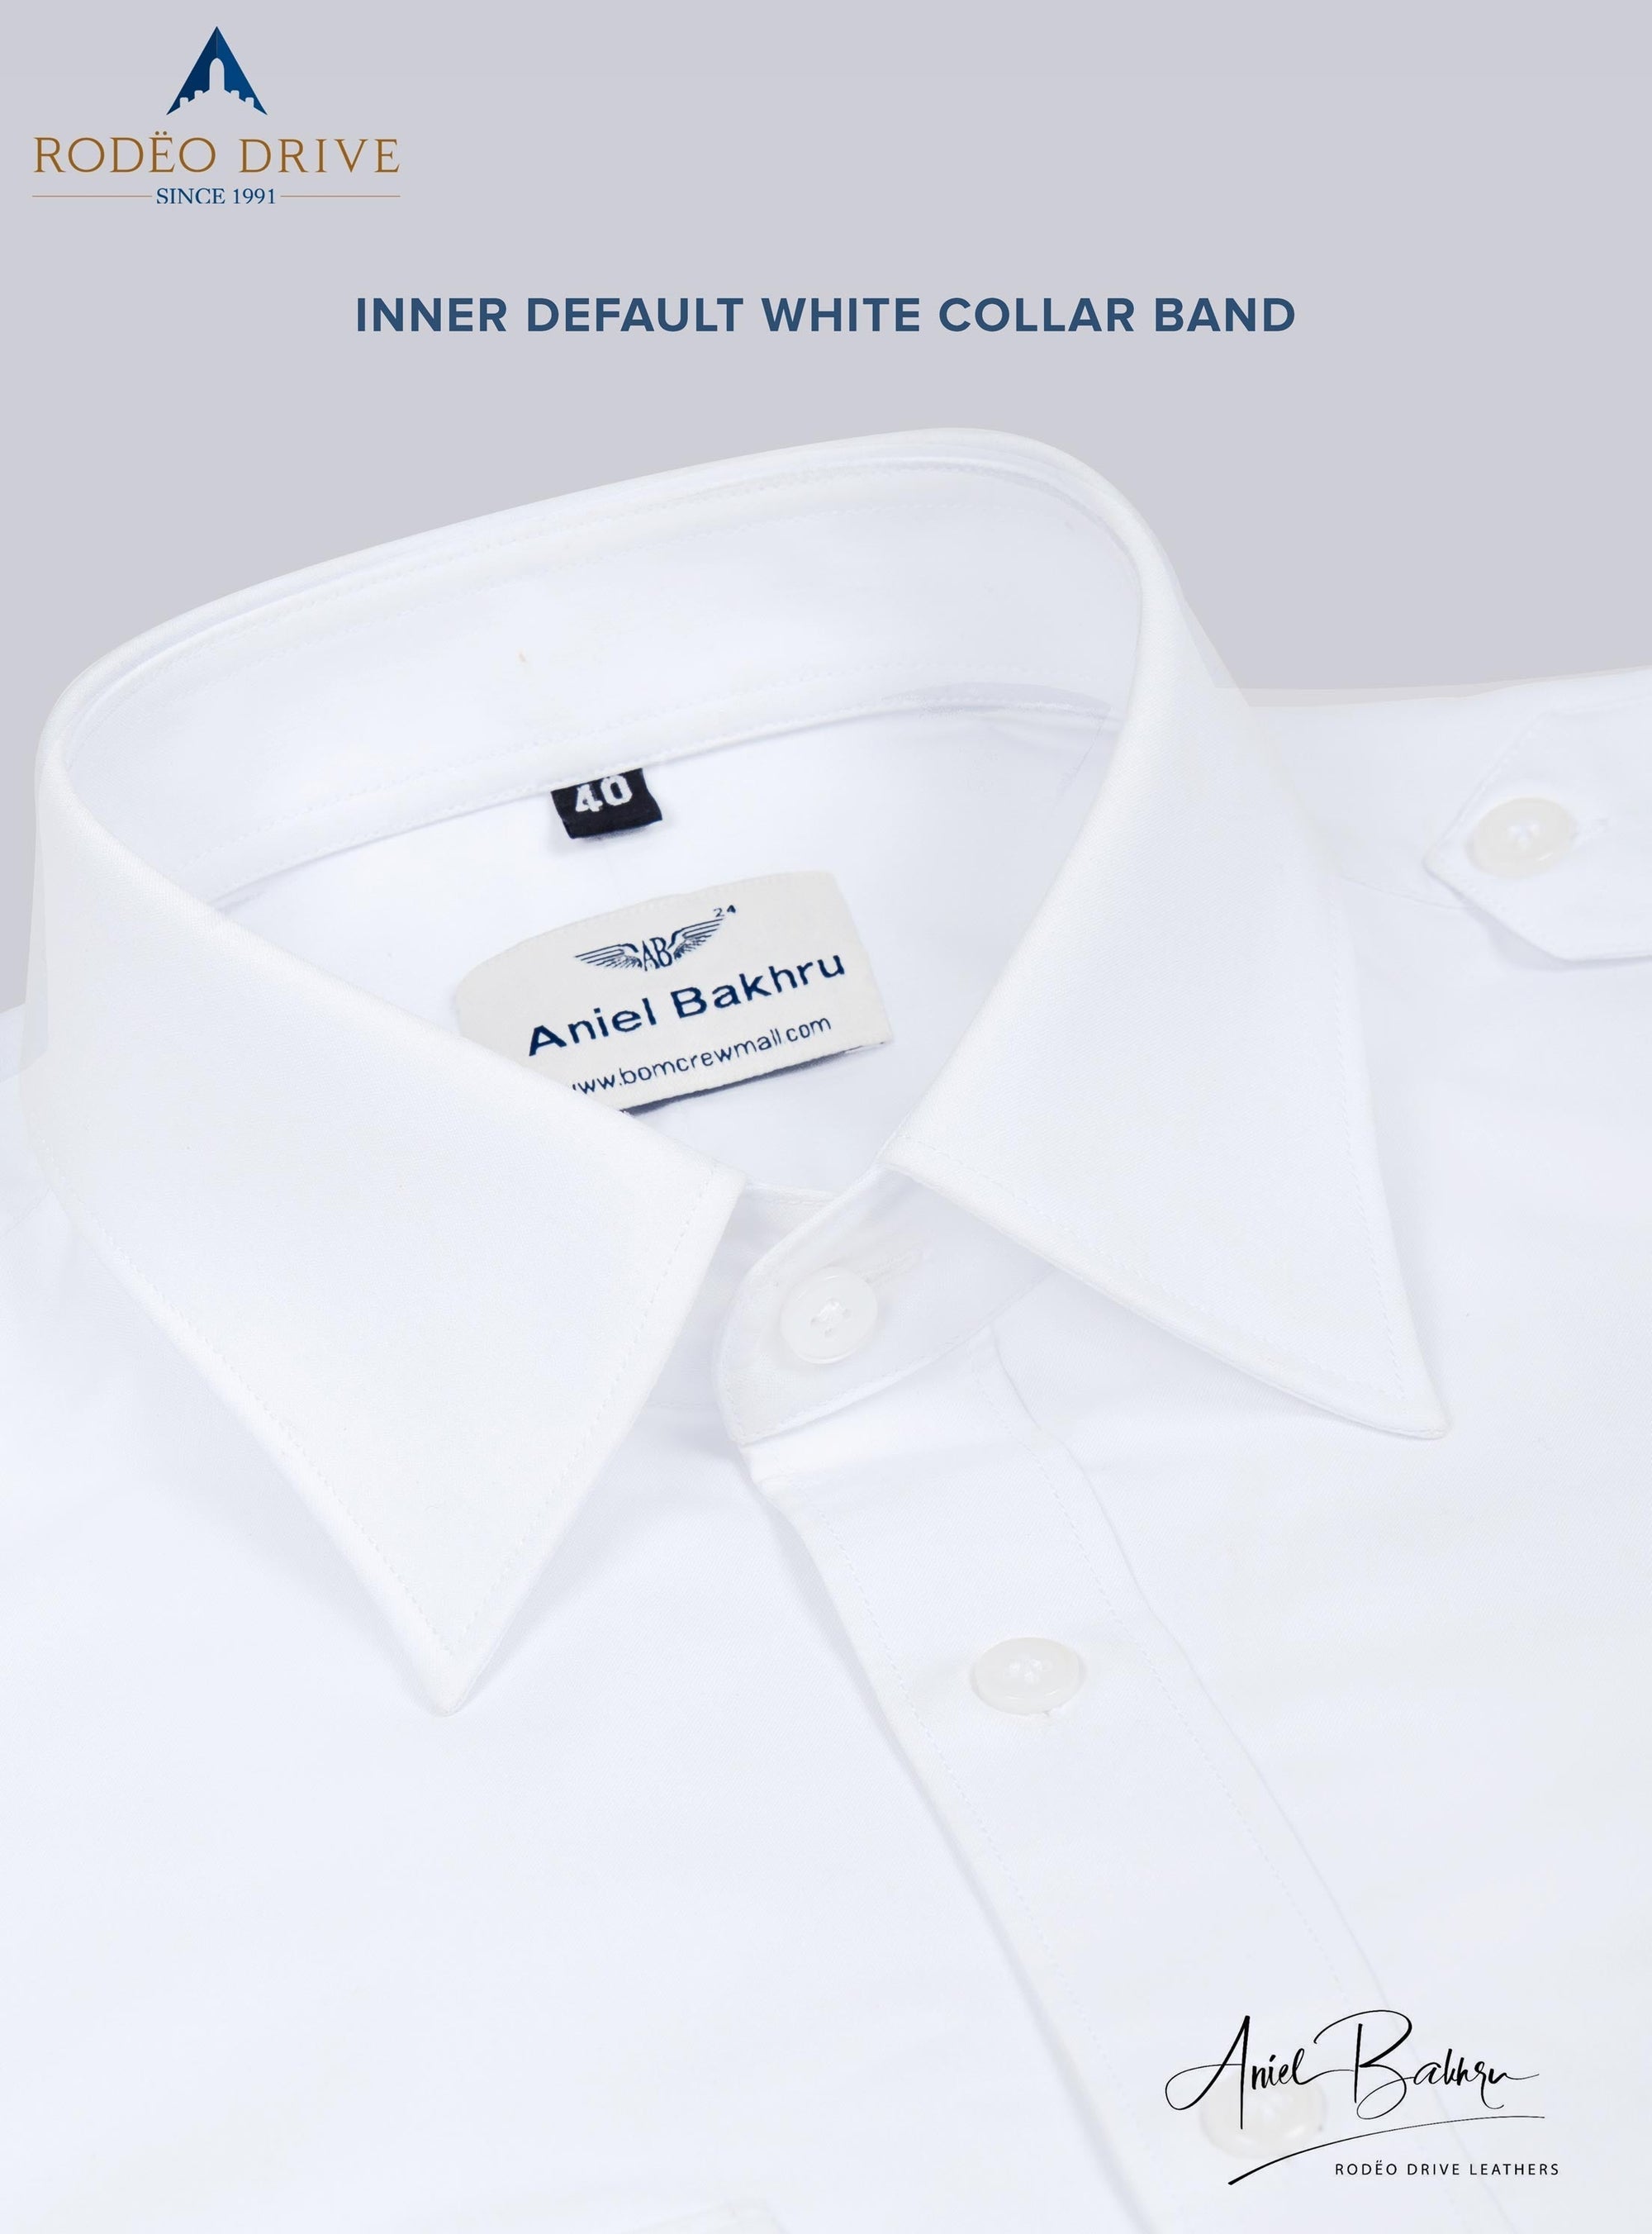 Image depicting default inner white collar band of Custom Pilot Shirt Men